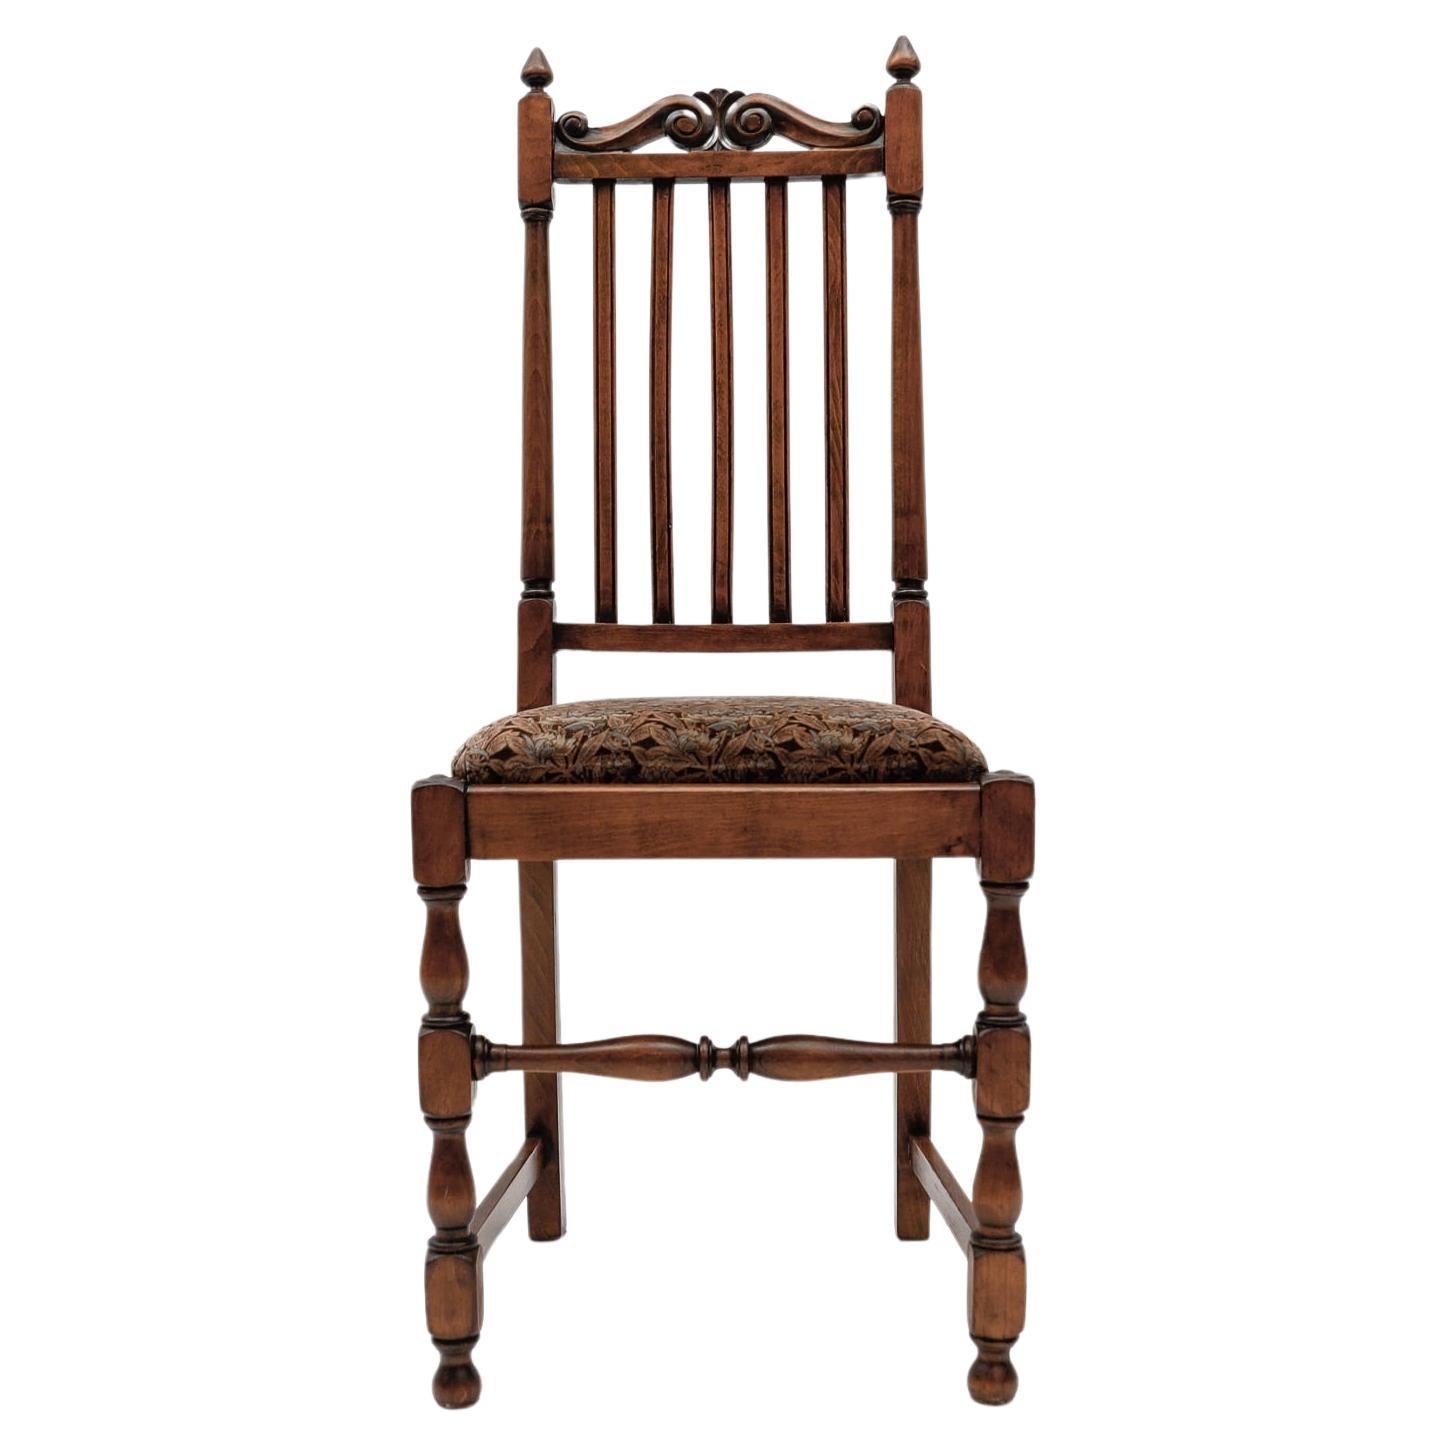 Antique Belle Époque Wooden Chair, 1900s Austria